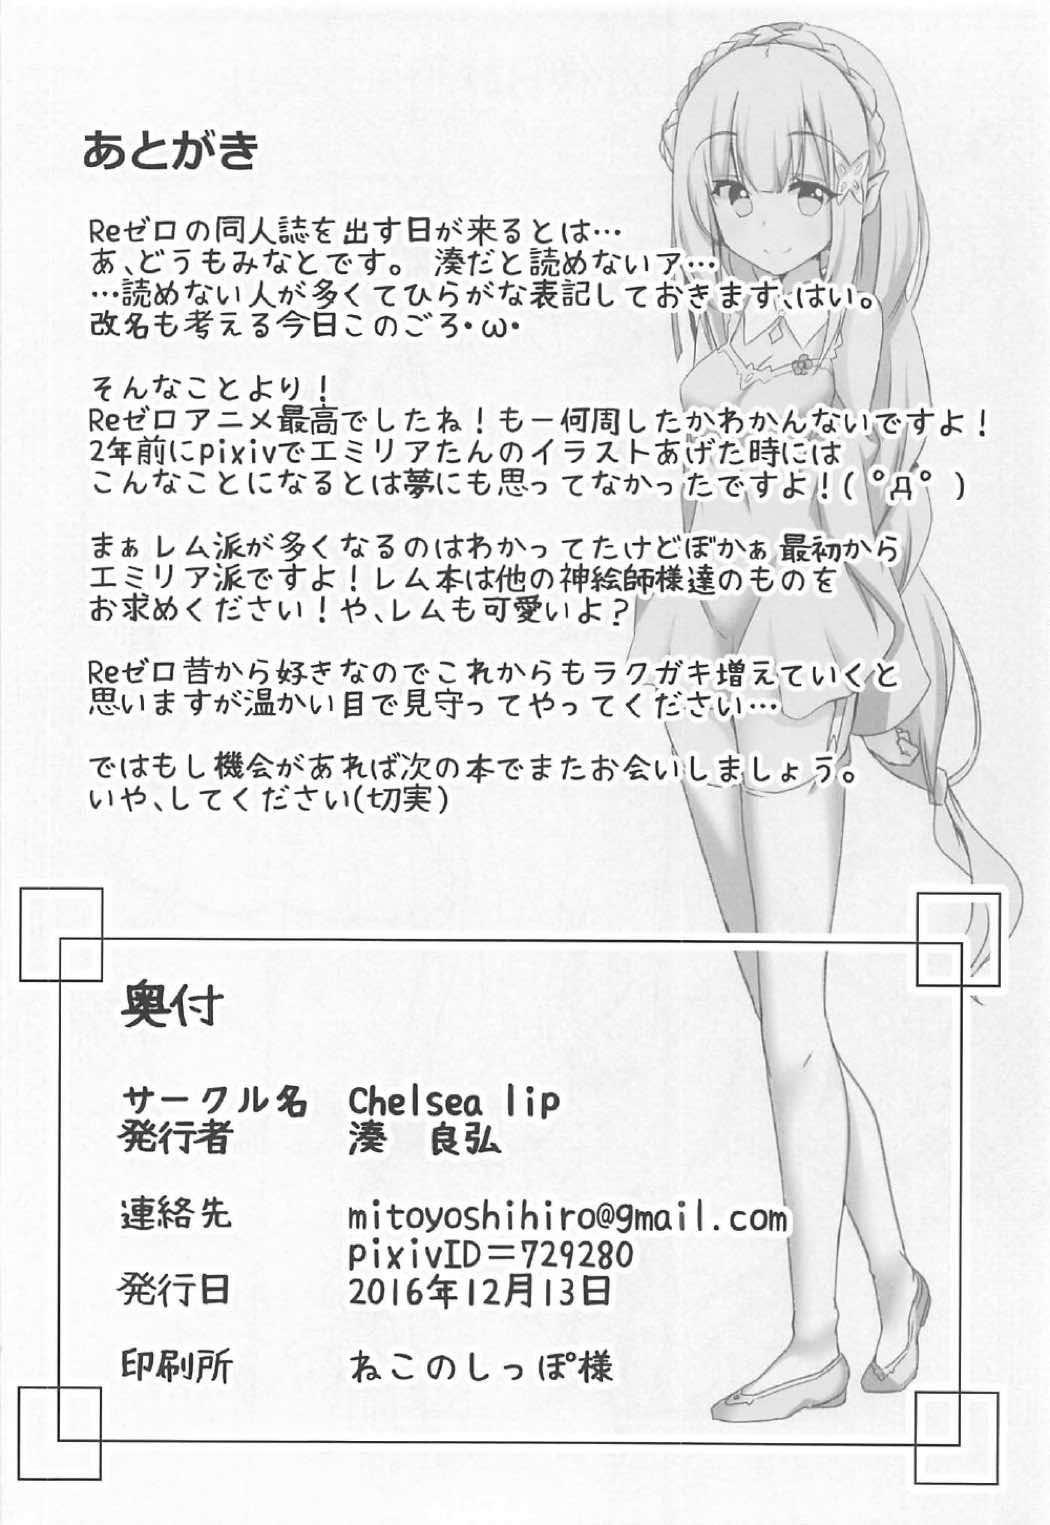 Fat Uchi no Heroine Chouzetsu Choroin - Re zero kara hajimeru isekai seikatsu Nalgona - Page 21